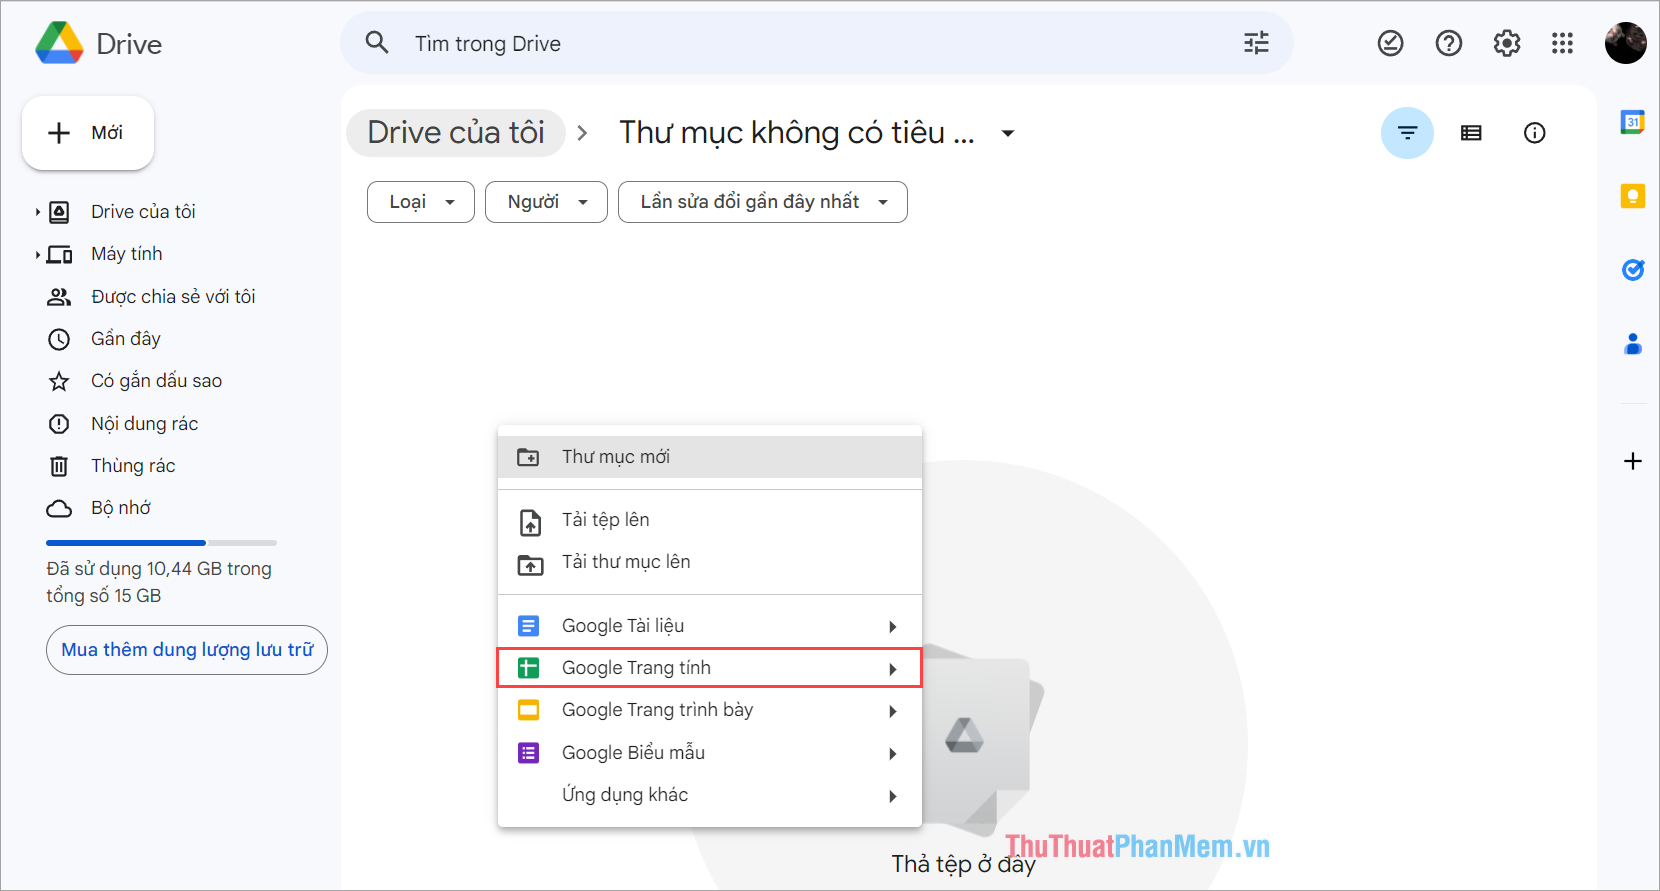 Bạn Click chuột phải vào khoảng trống trên Google Drive và chọn Google Trang tính